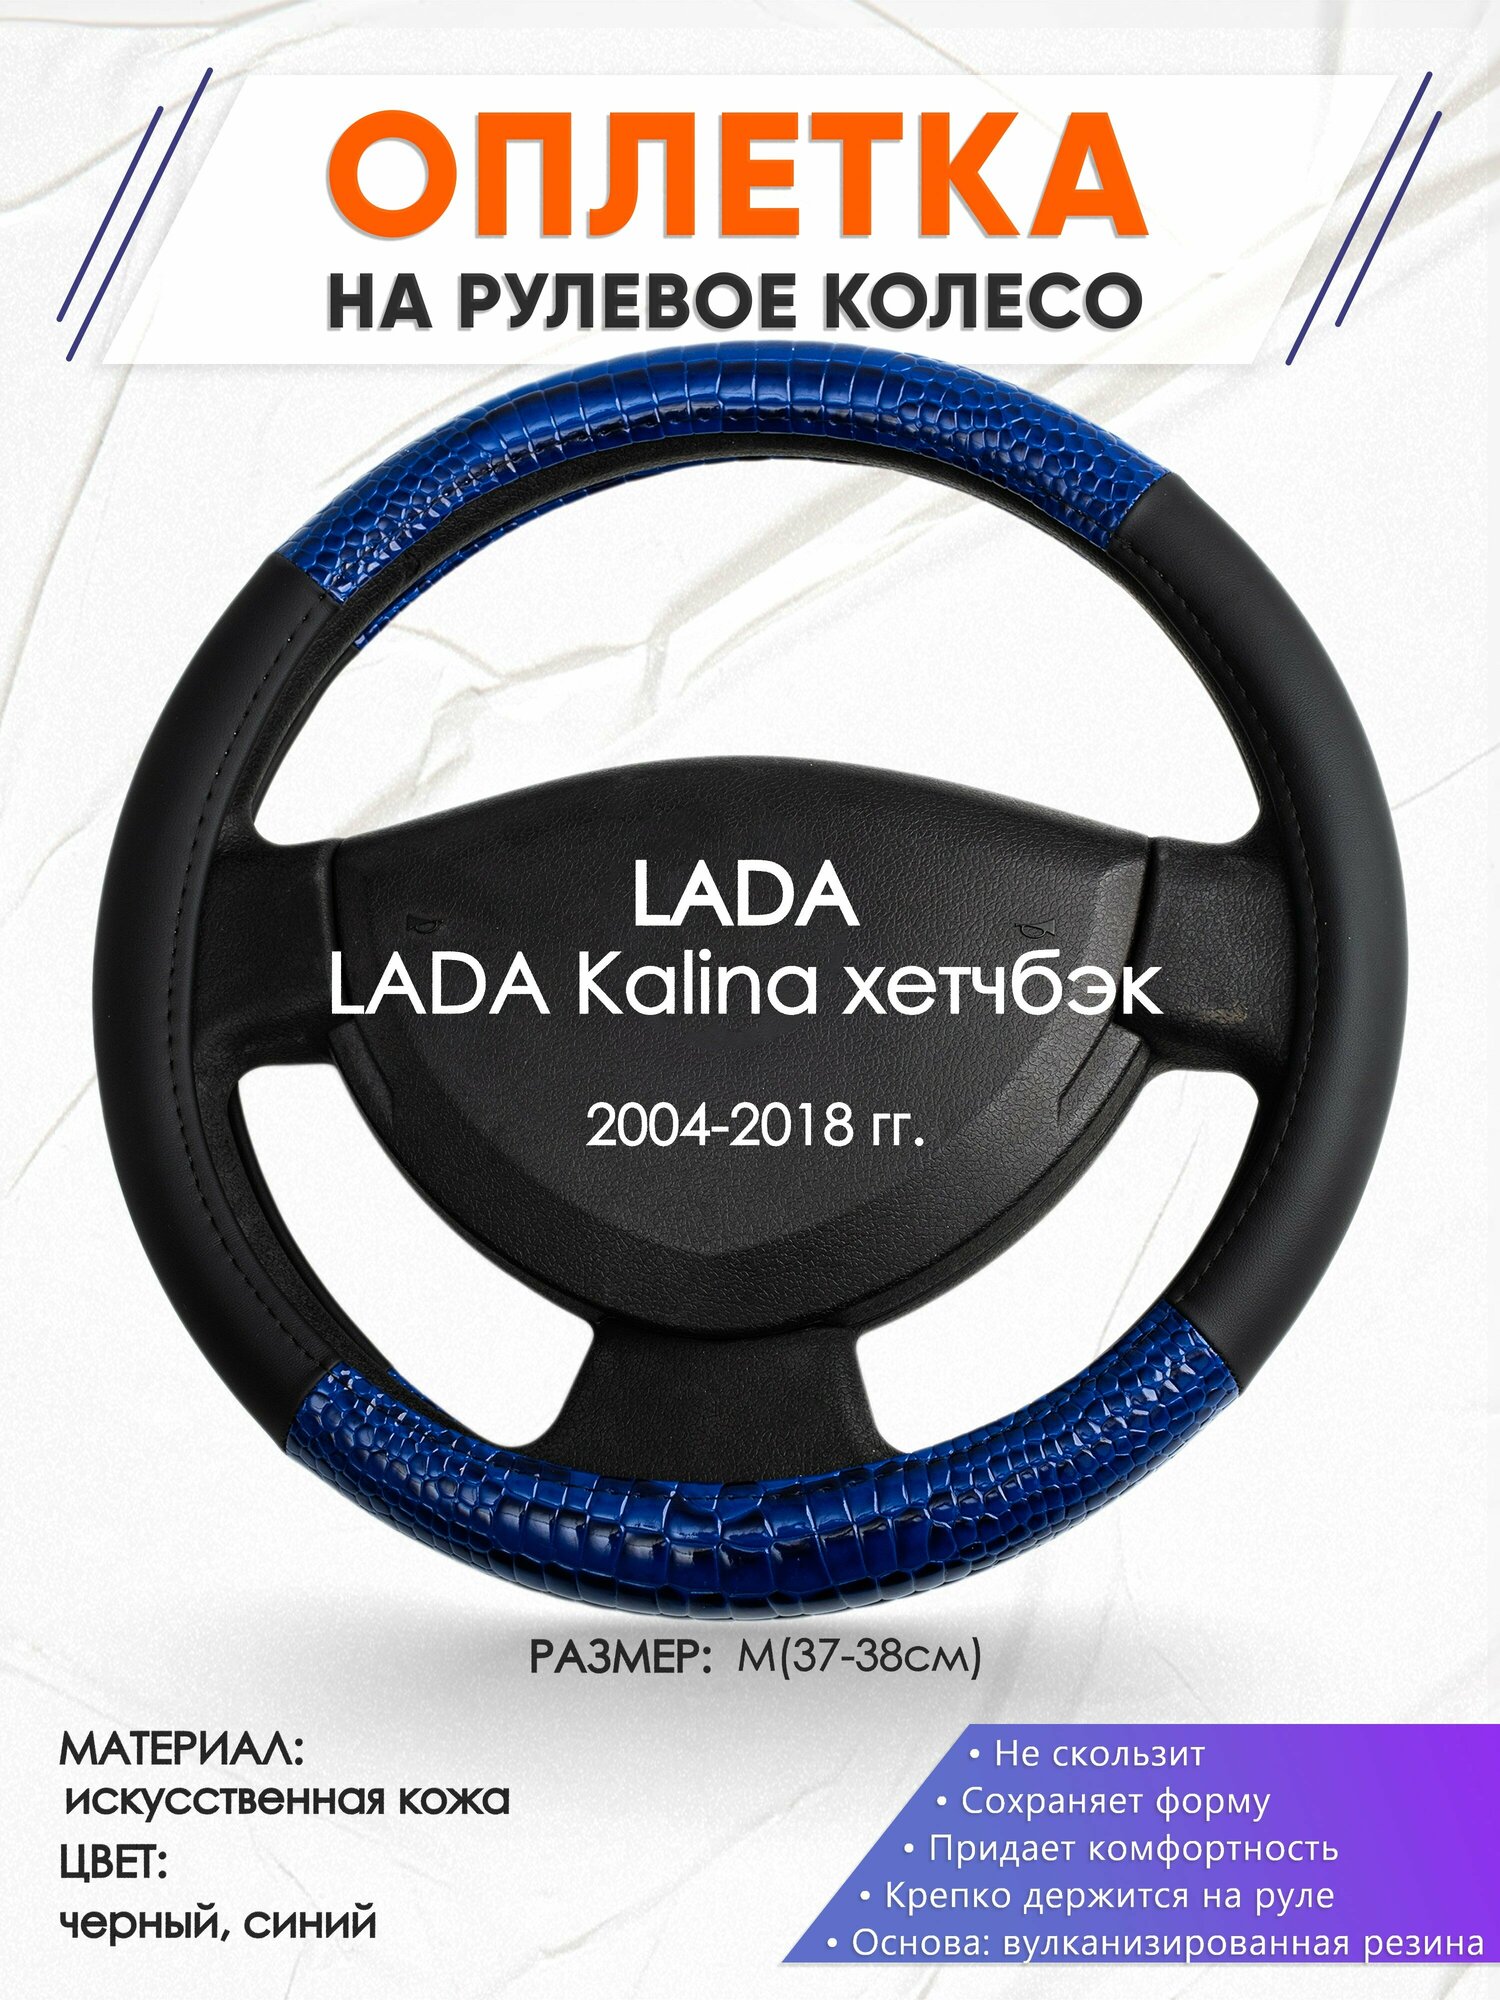 Оплетка наруль для LADA Kalina хетчбэк(Лада Калина) 2004-2018 годов выпуска, размер M(37-38см), Искусственная кожа 82